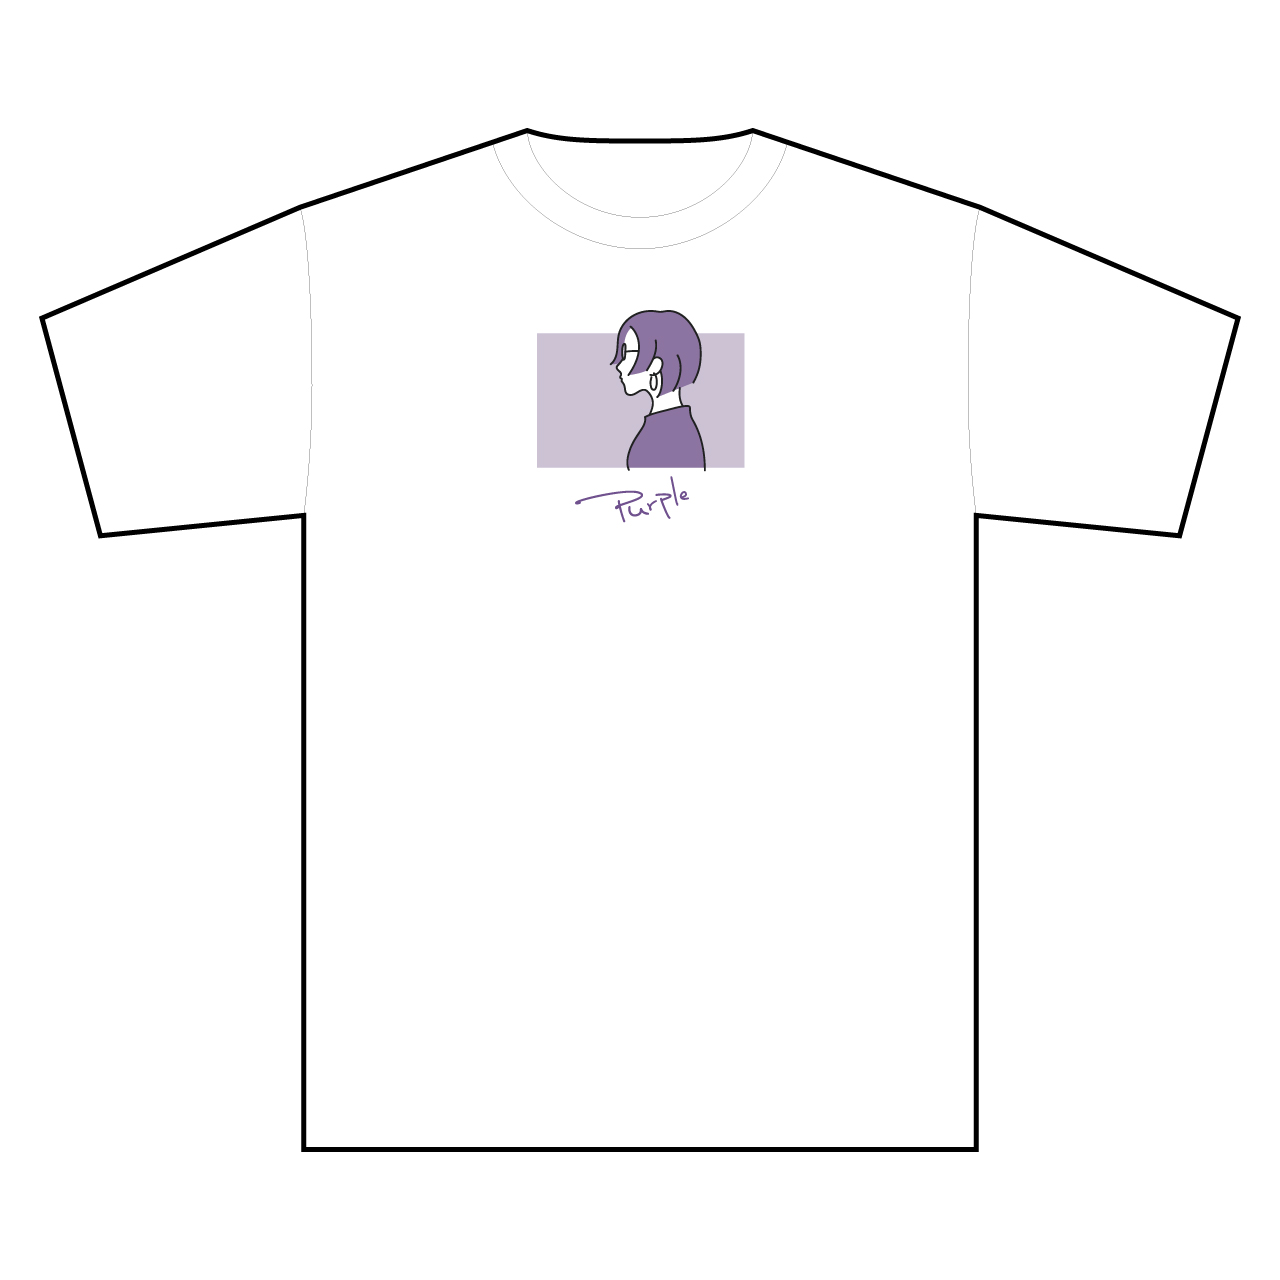 オリジナルイラストtシャツ 2980円 税込み 送料込み Base Mag